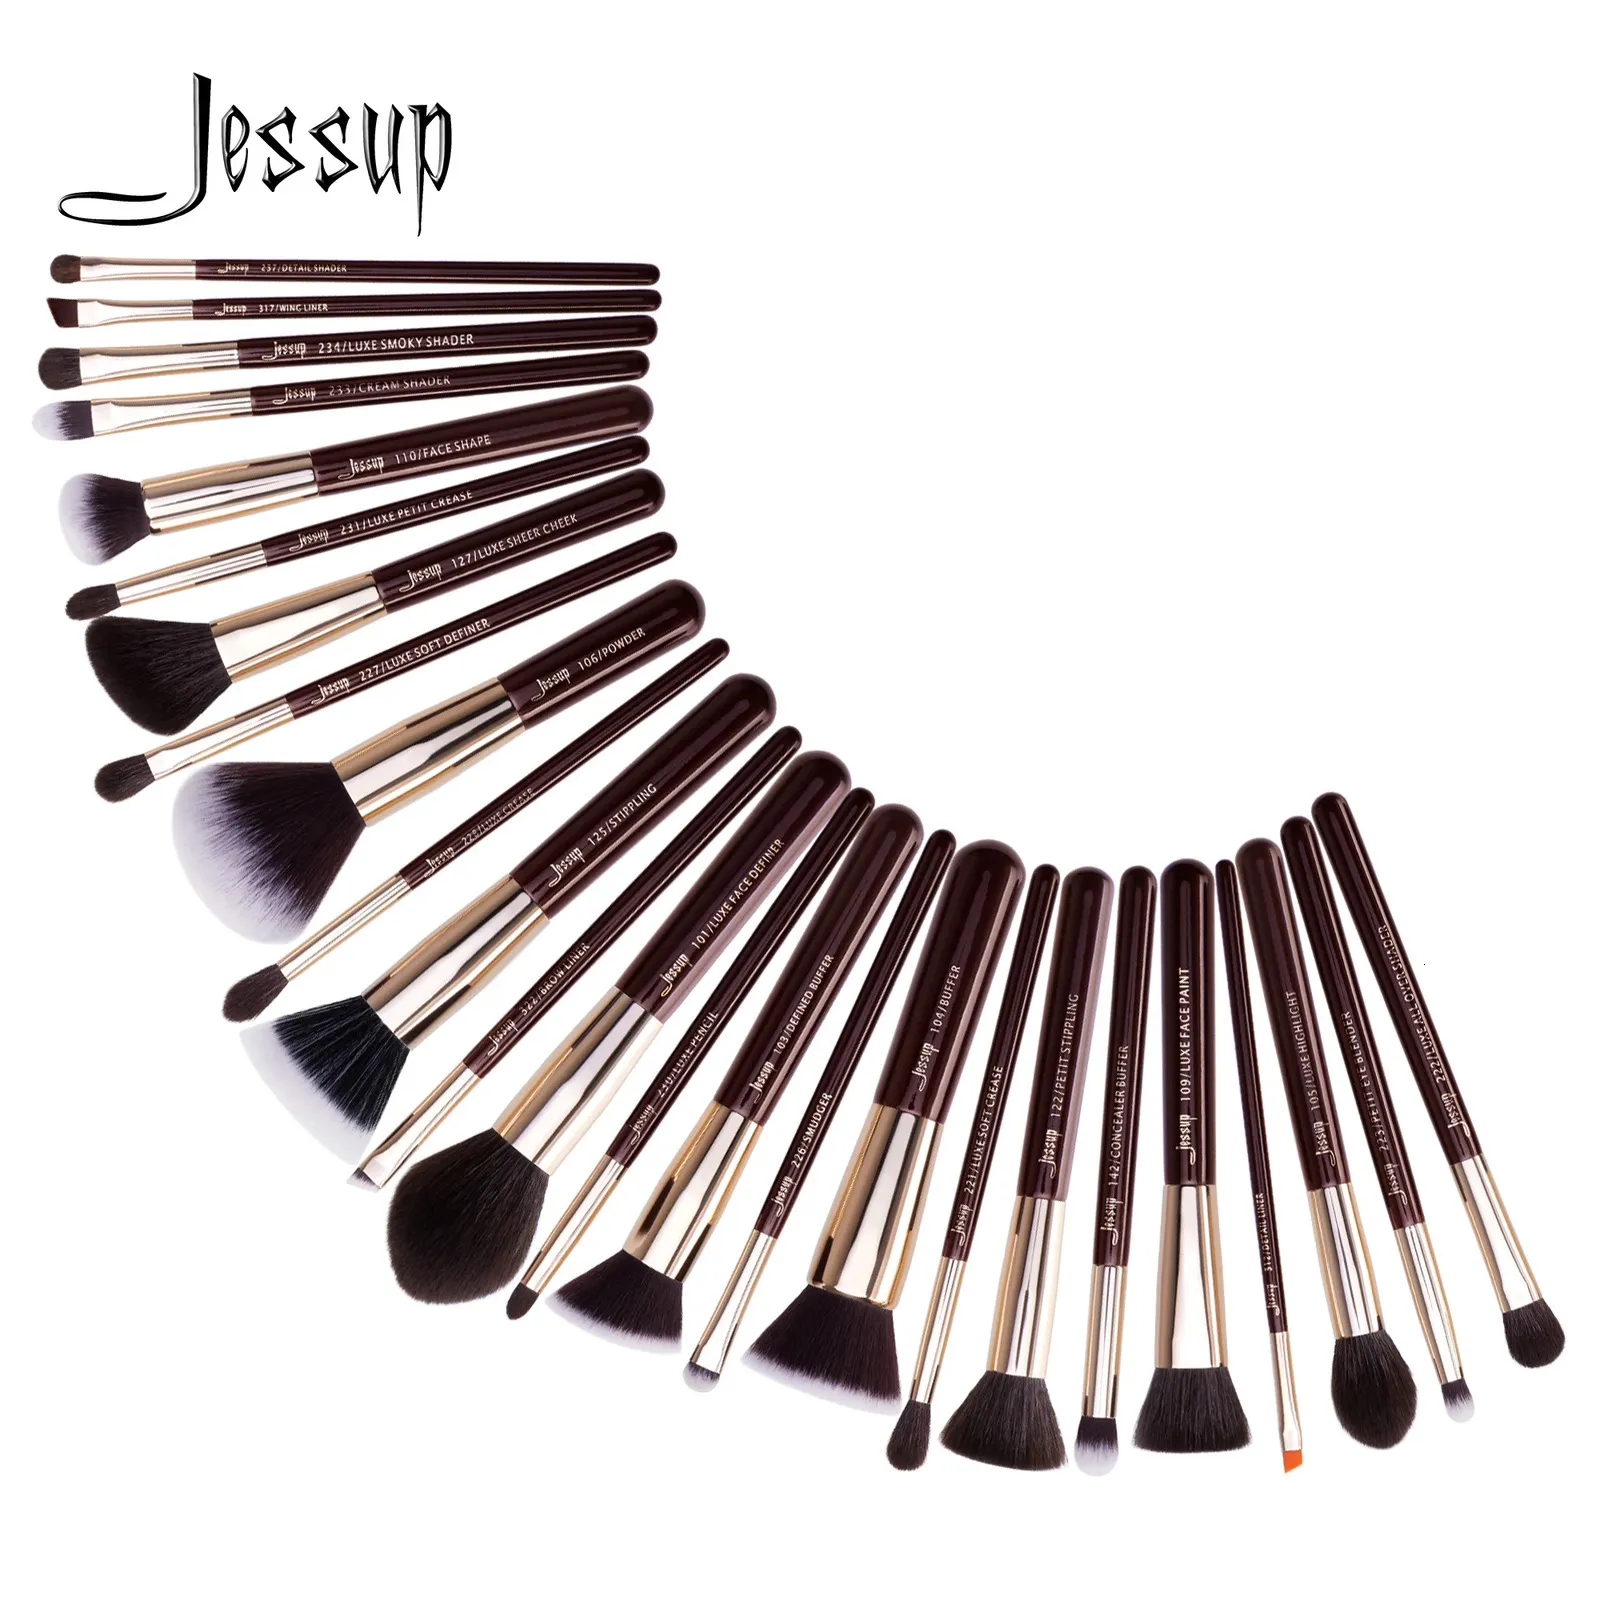 Jessup Make-up-Pinsel-Set, professionelles Make-up-Pinsel aus natürlichem Kunsthaar, Foundation, Puder, Kontur, Lidschatten, 25 Stück 240102